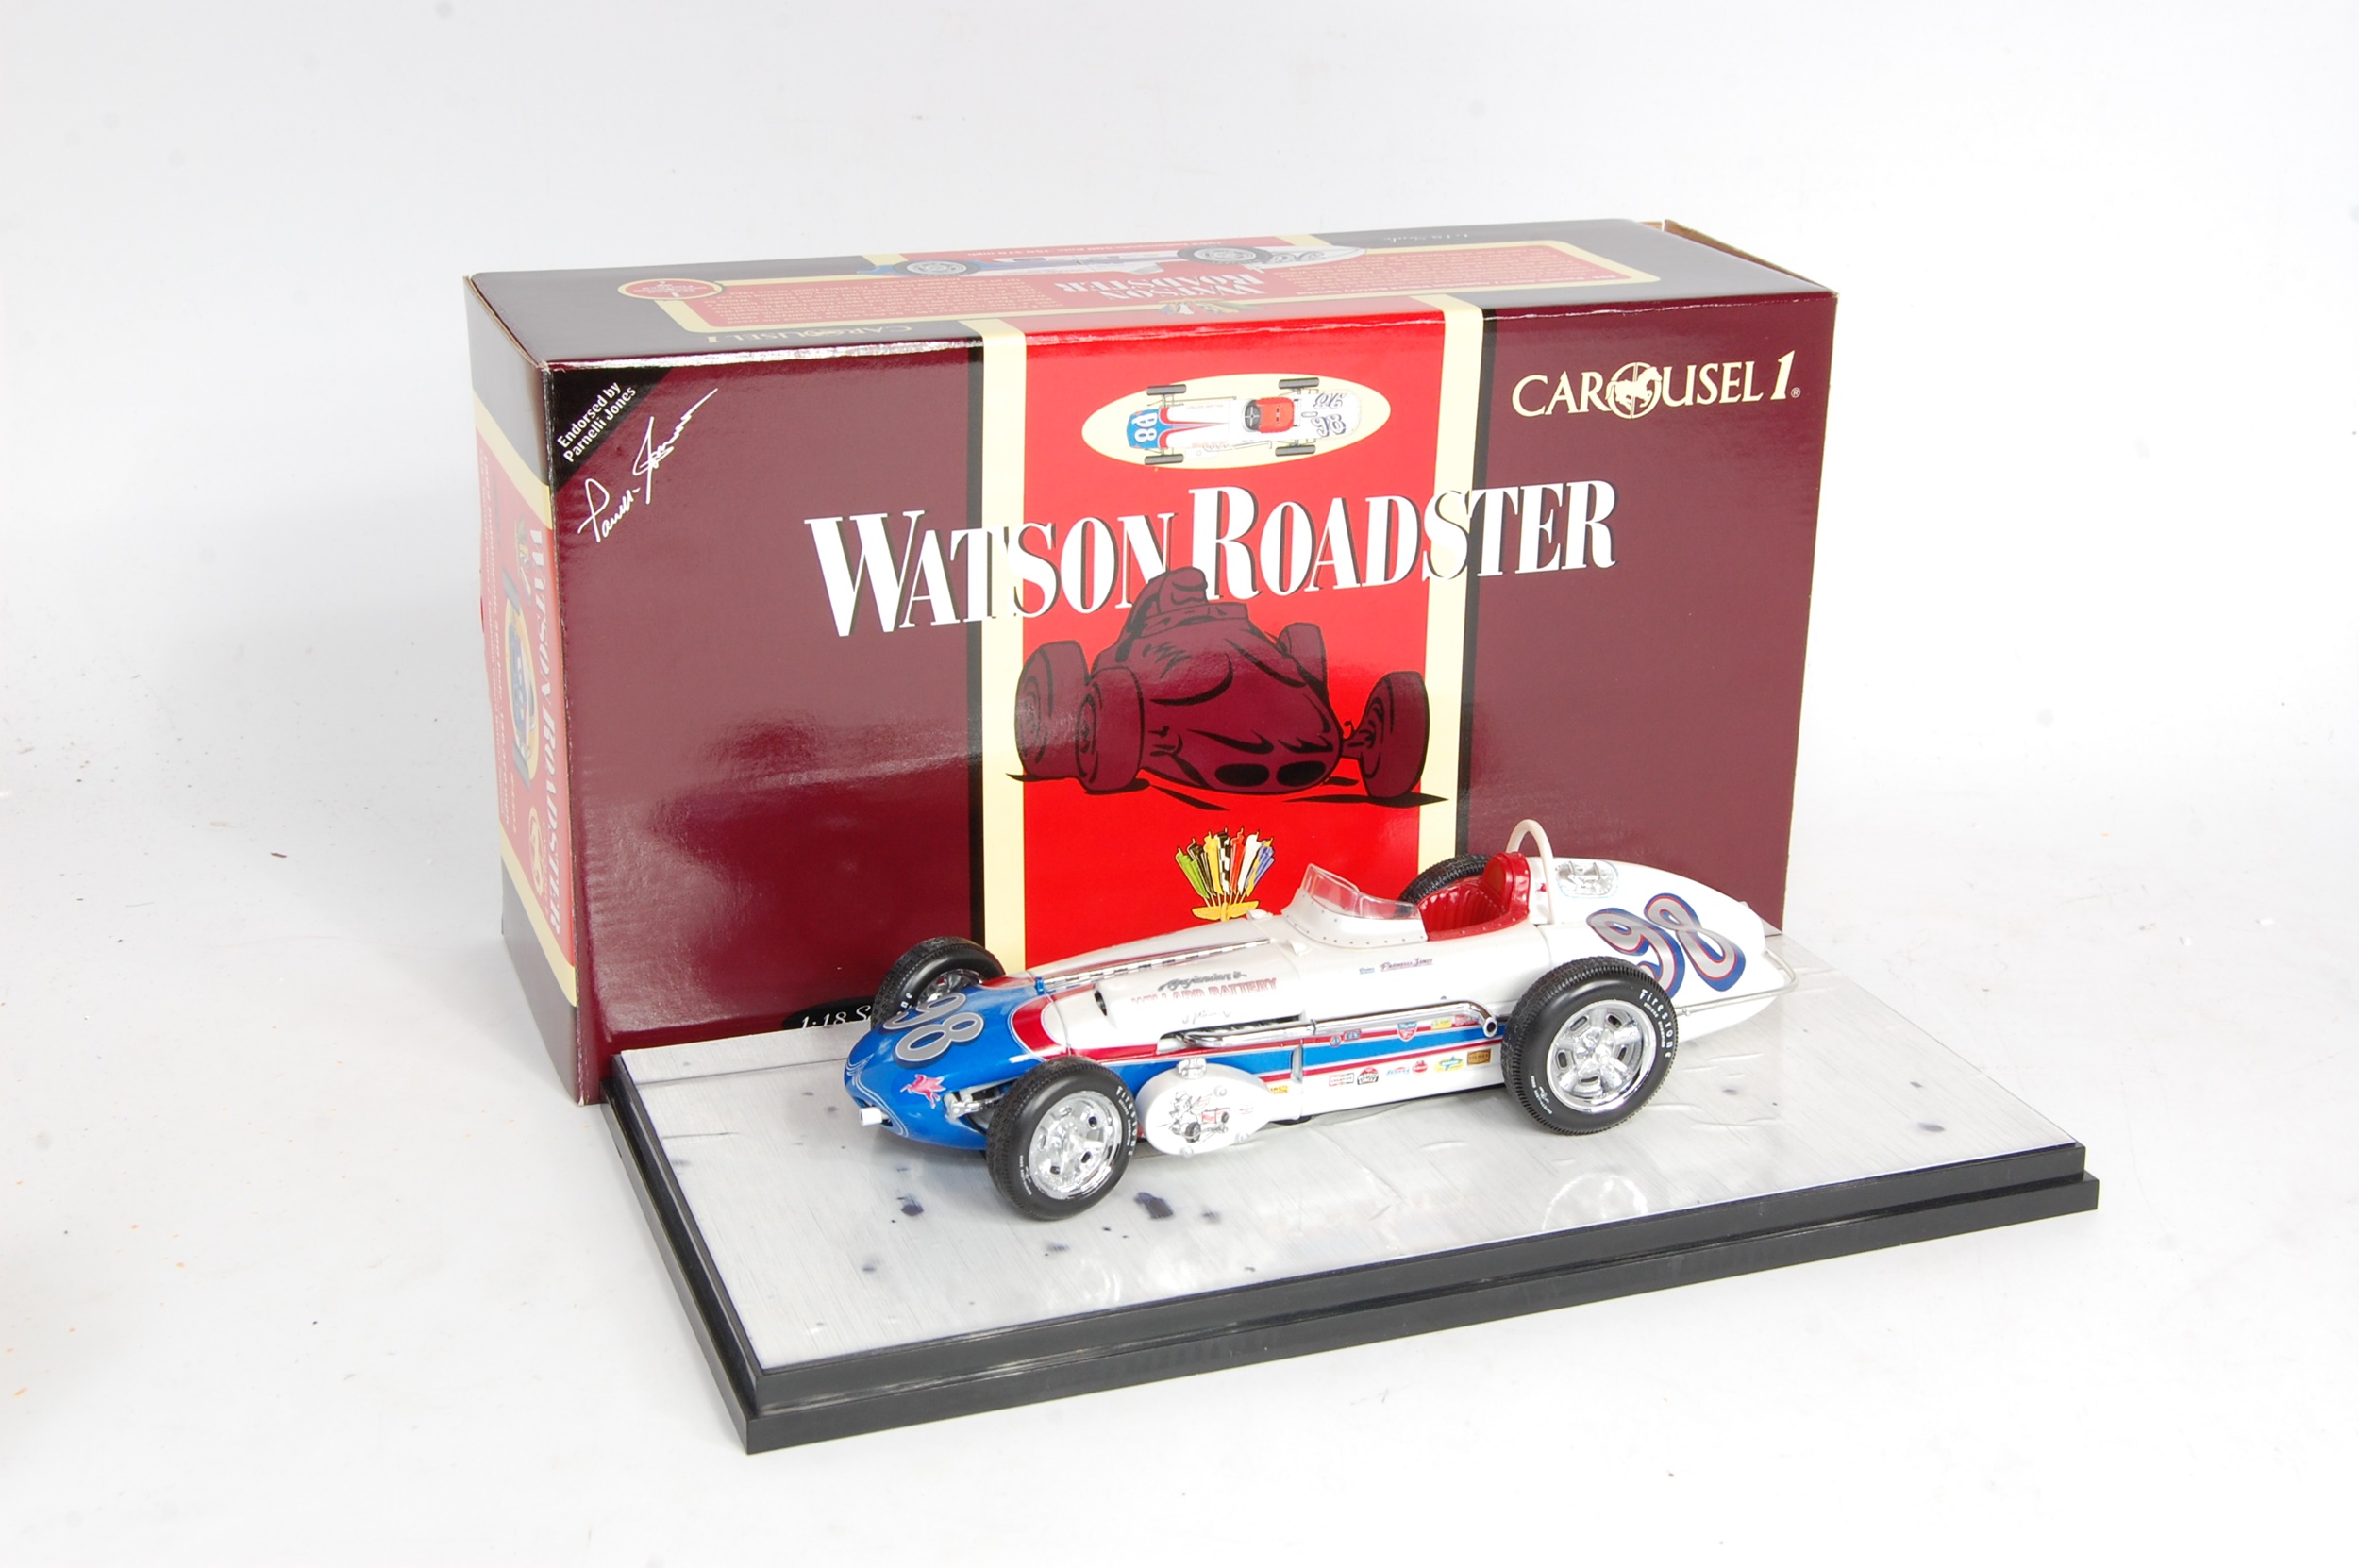 Lot 2534 - A Carousel 1 1/18 scale Watson Roadster